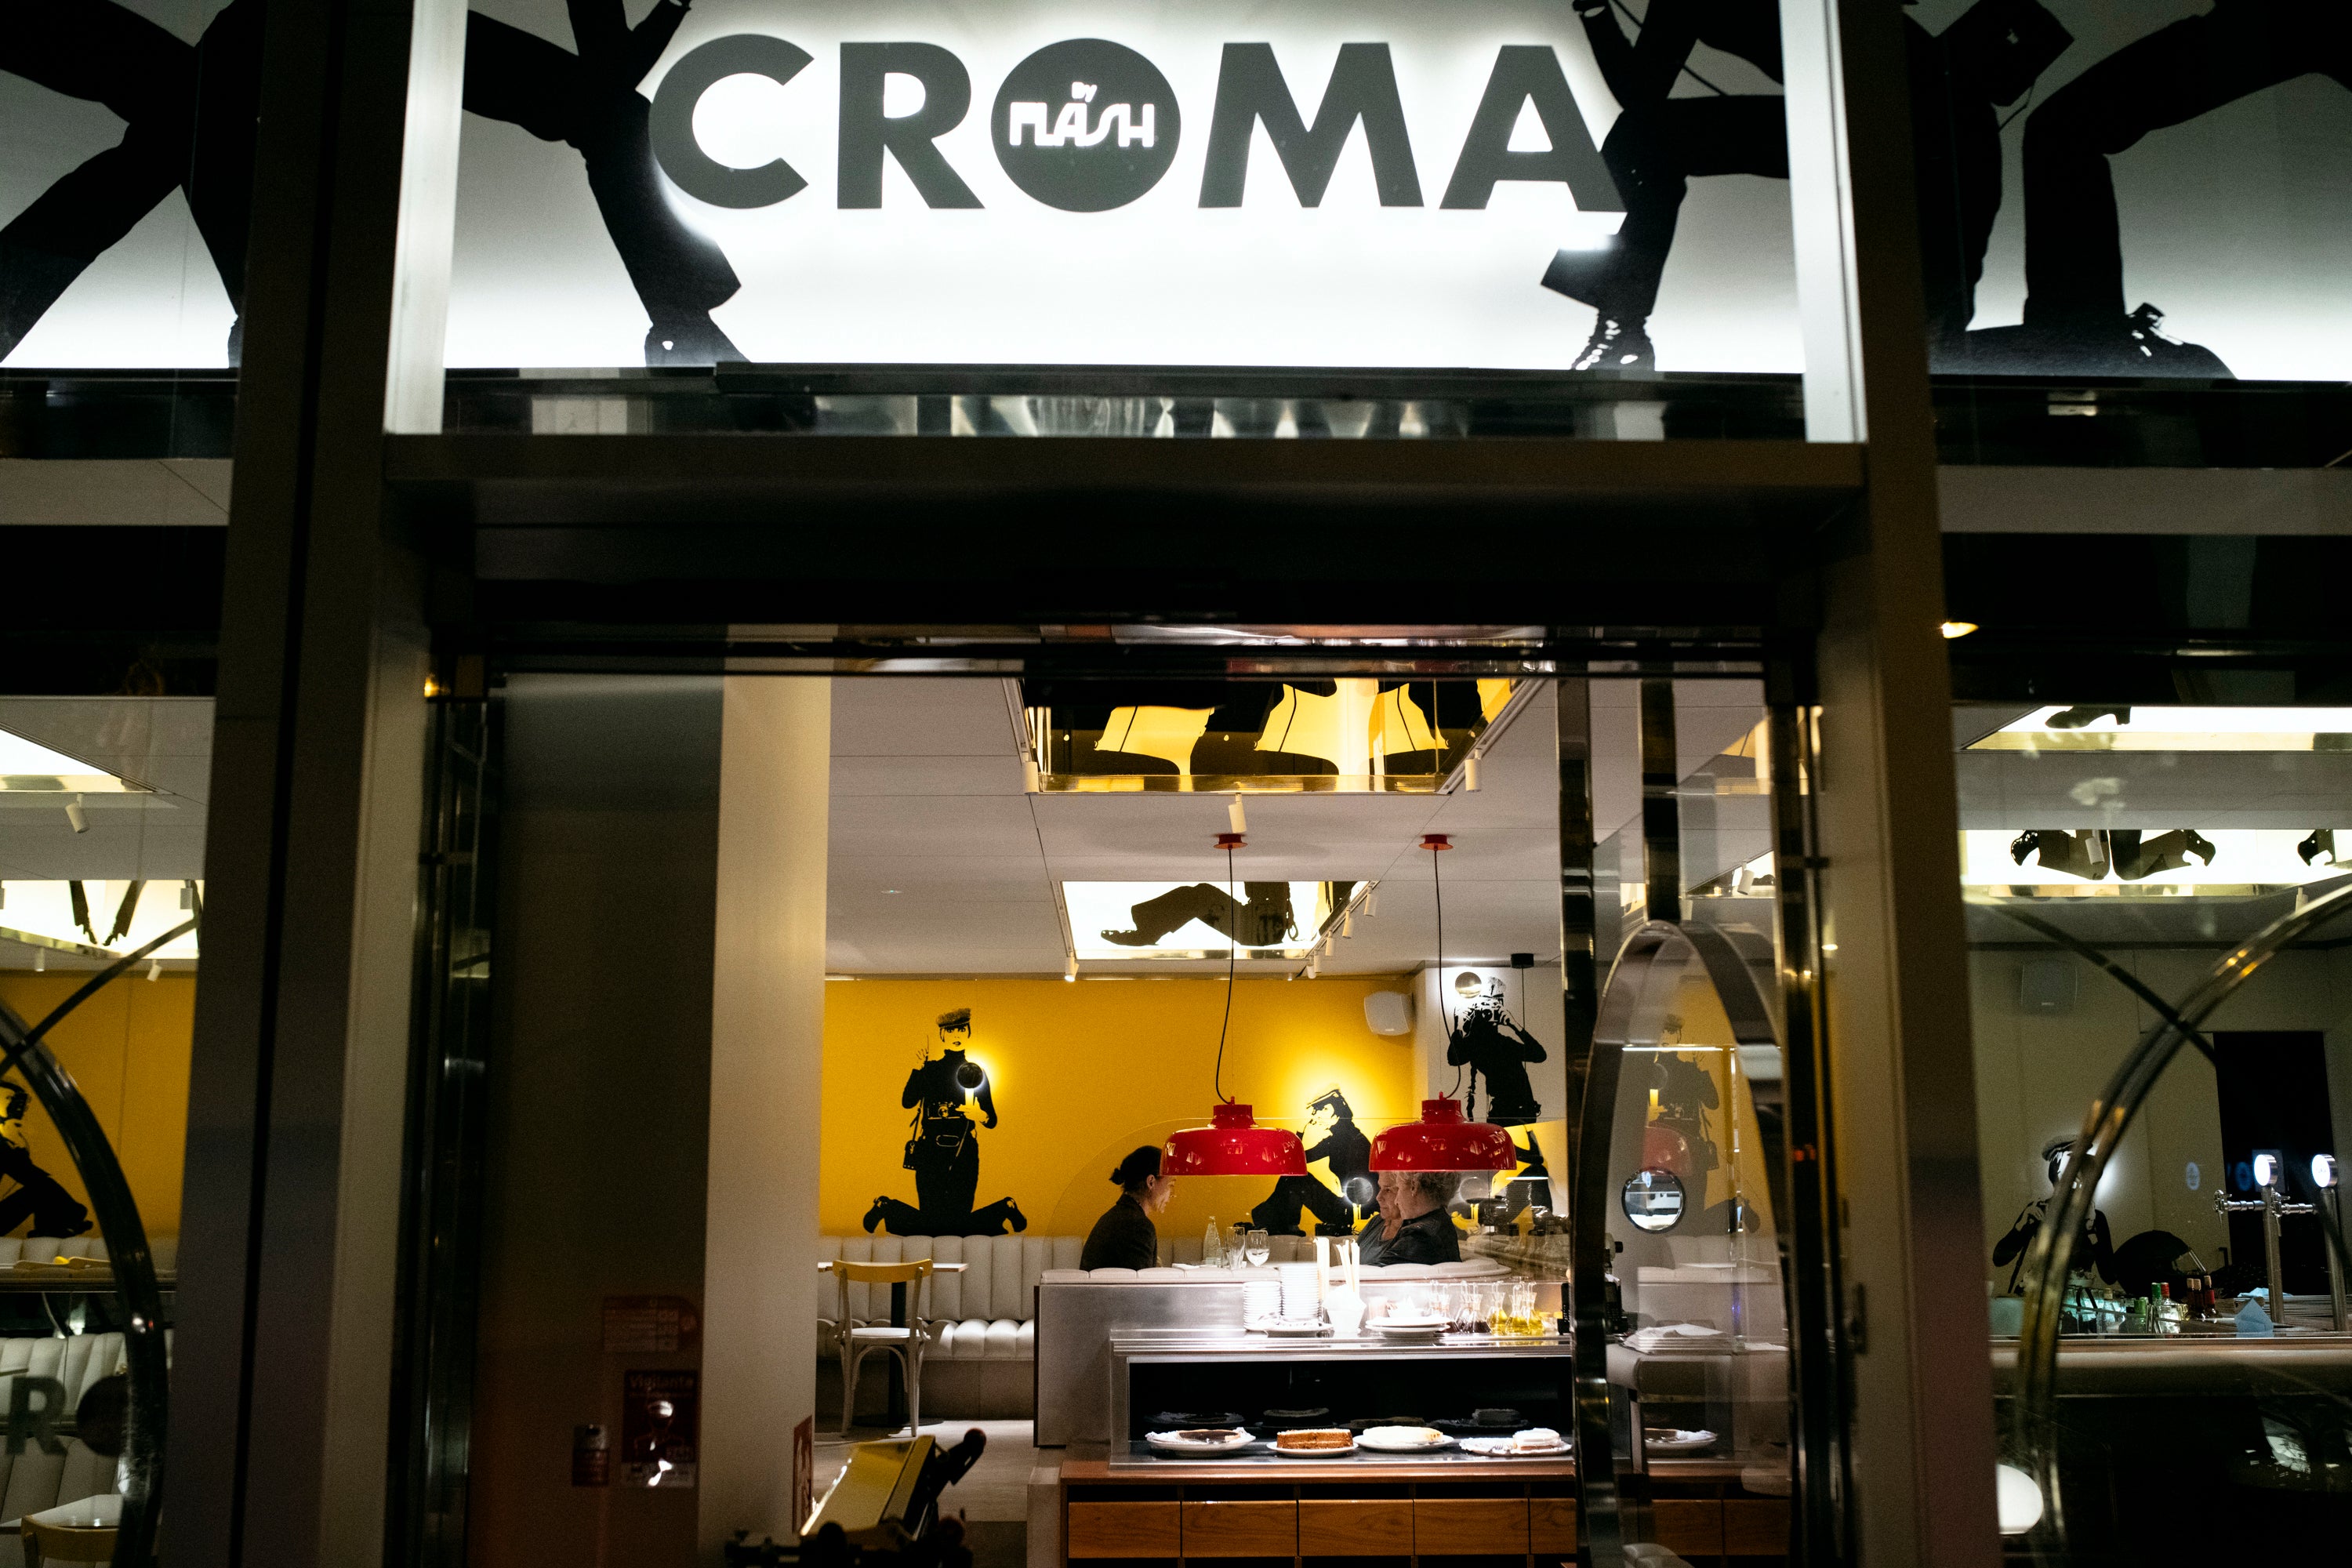 Restaurante Croma by Flash puerta y nombre